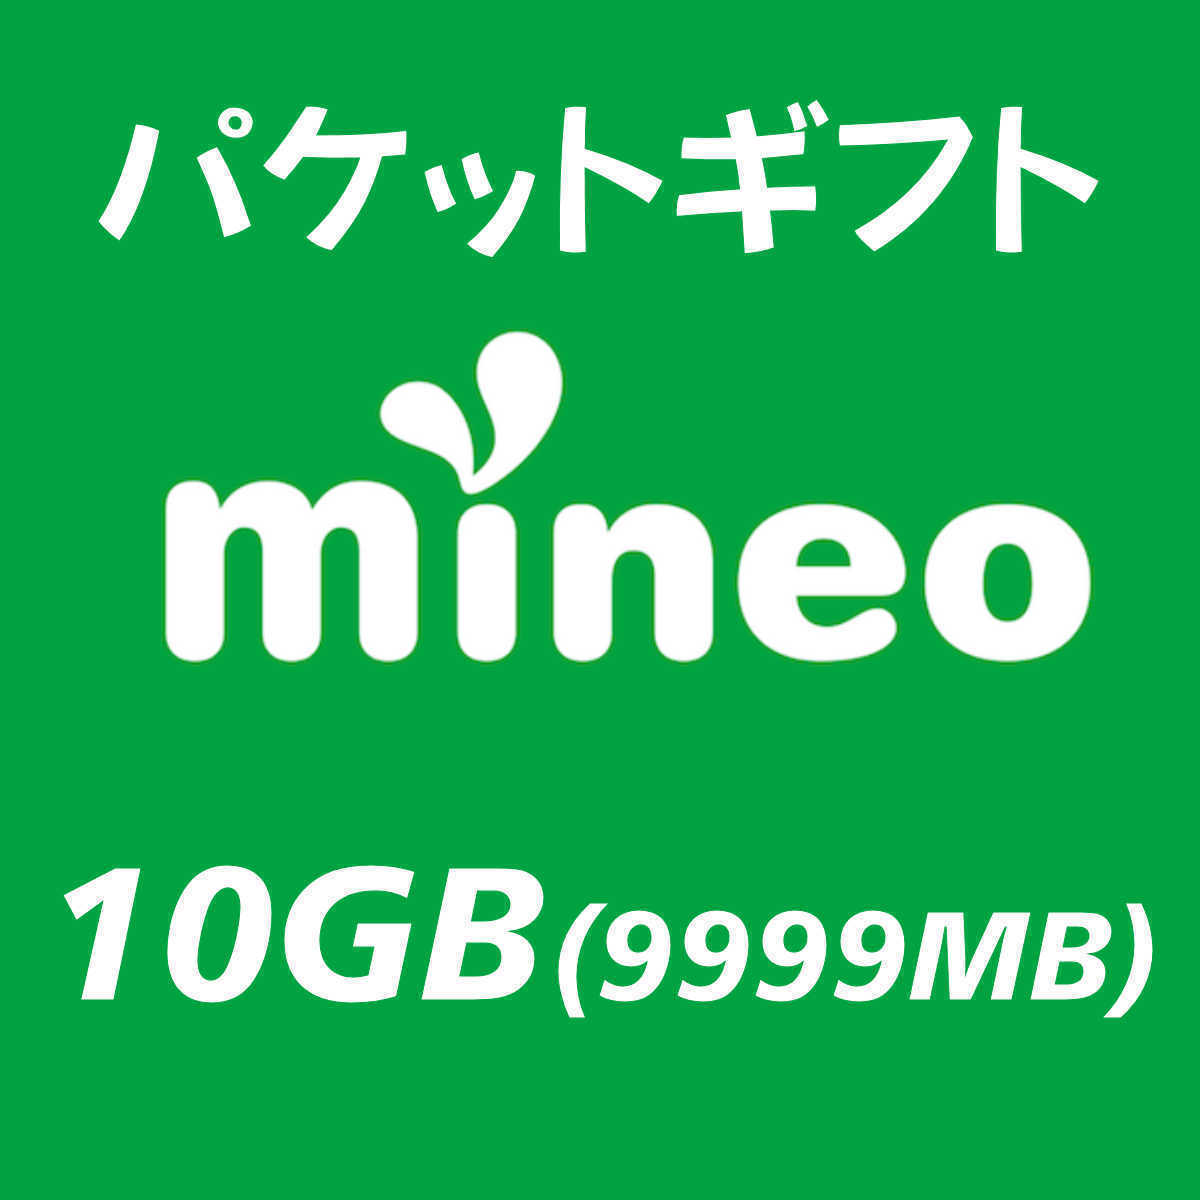 10GB(9999MB) マイネオ　パケットギフト mineo_画像1